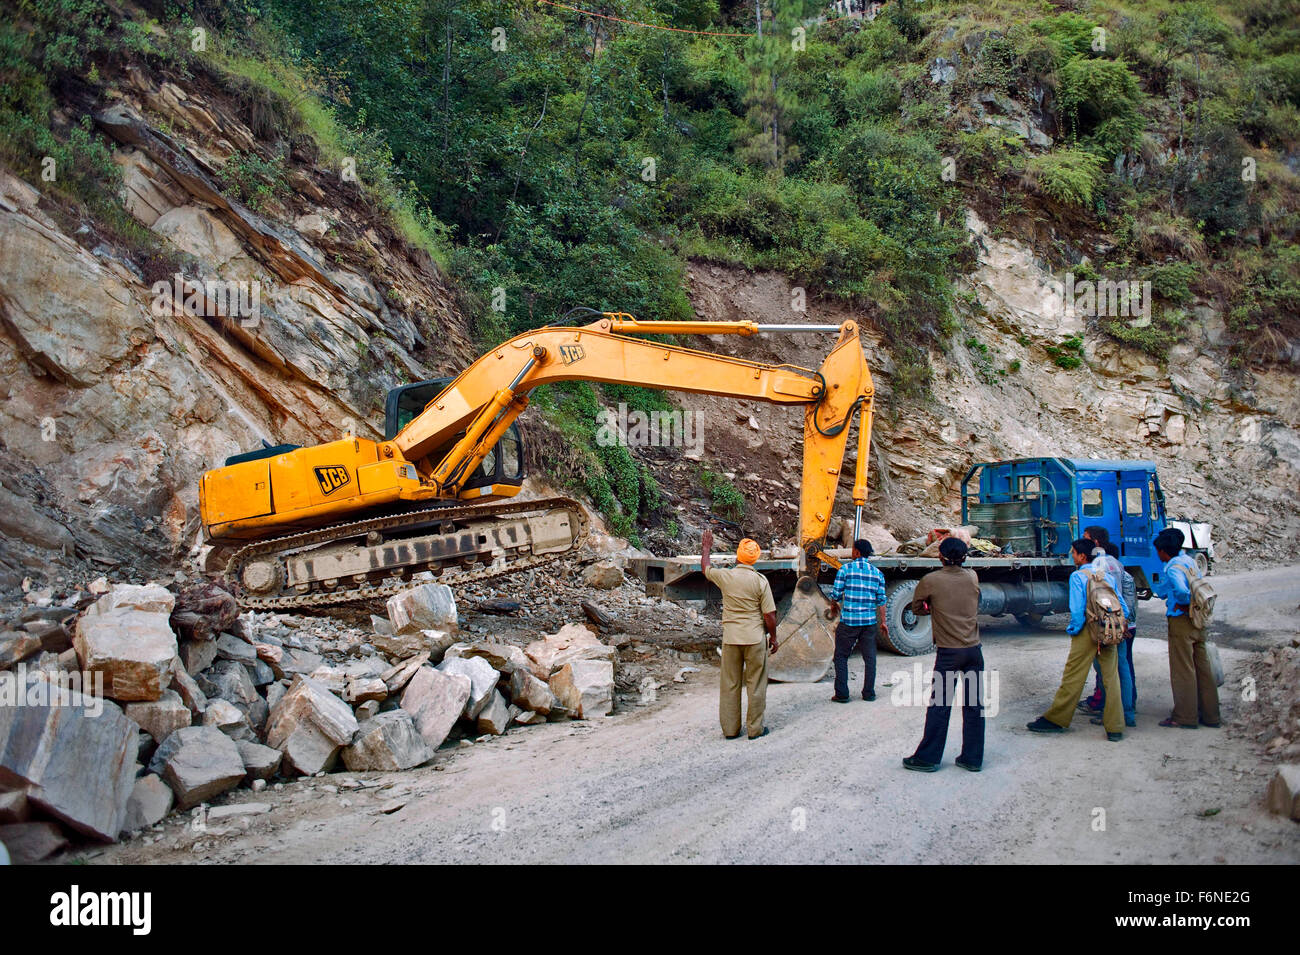 Hydraulic excavator on road, uttarakhand, india, asia Stock Photo